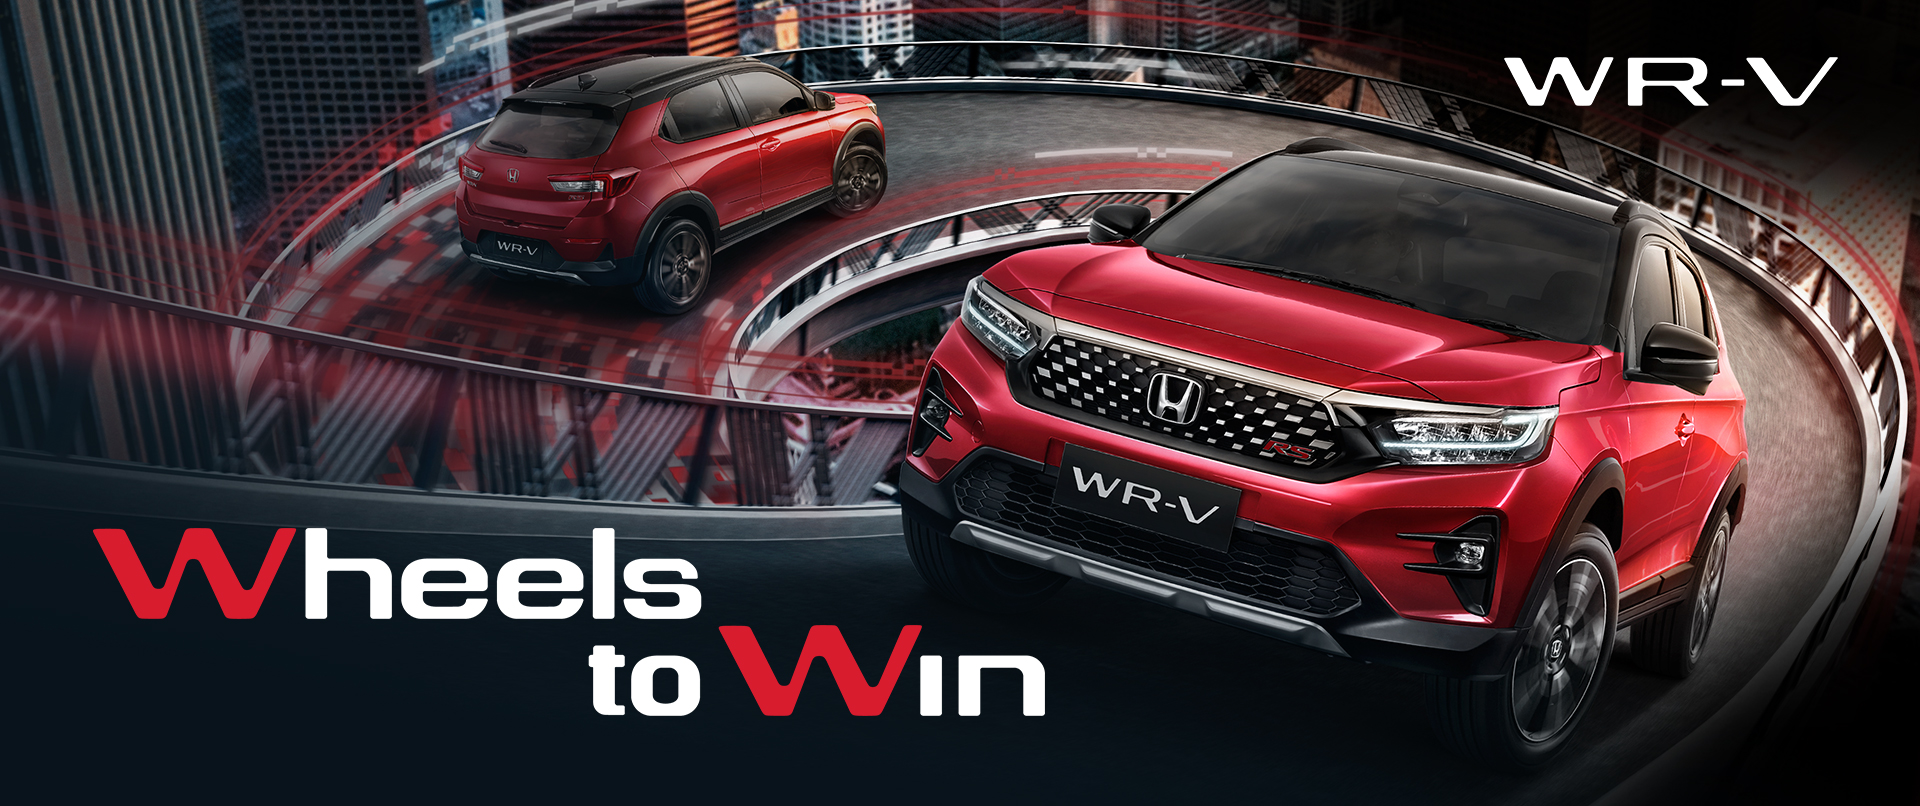 Honda WR-V WHEELS TO WIN